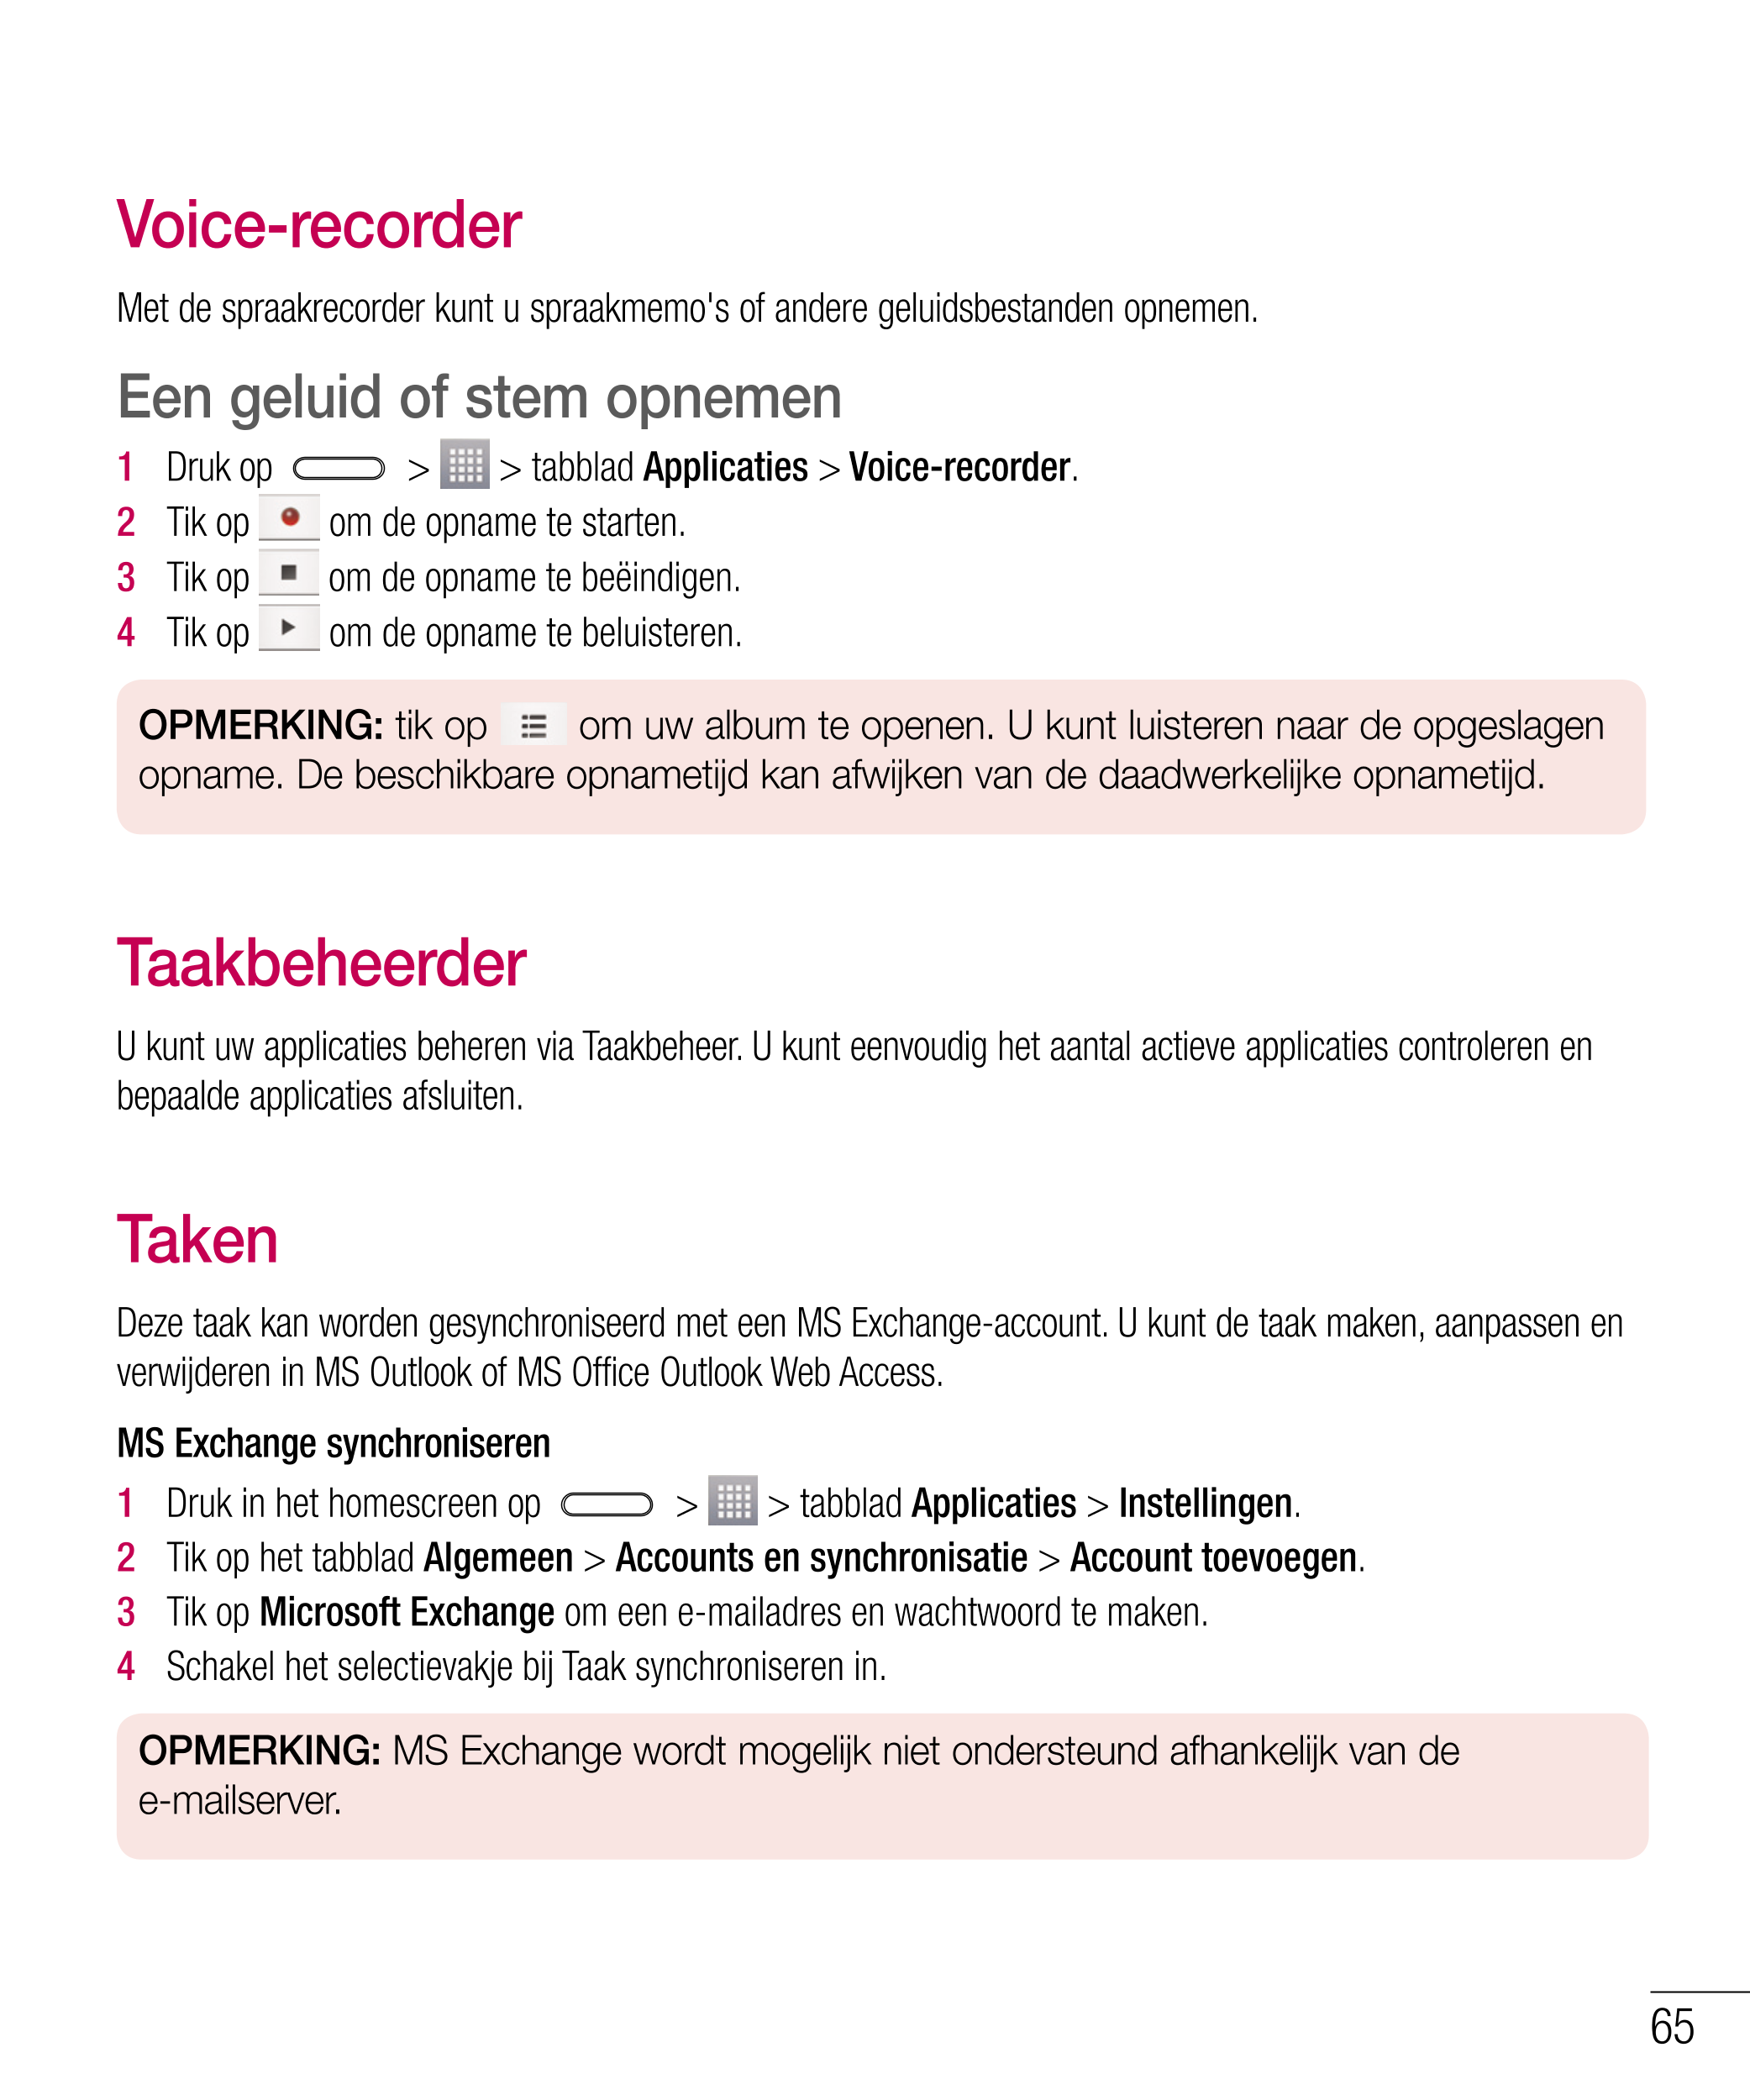 Voice-recorder
Met de spraakrecorder kunt u spraakmemo's of andere geluidsbestanden opnemen.
Een geluid of stem opnemen
1    Dru